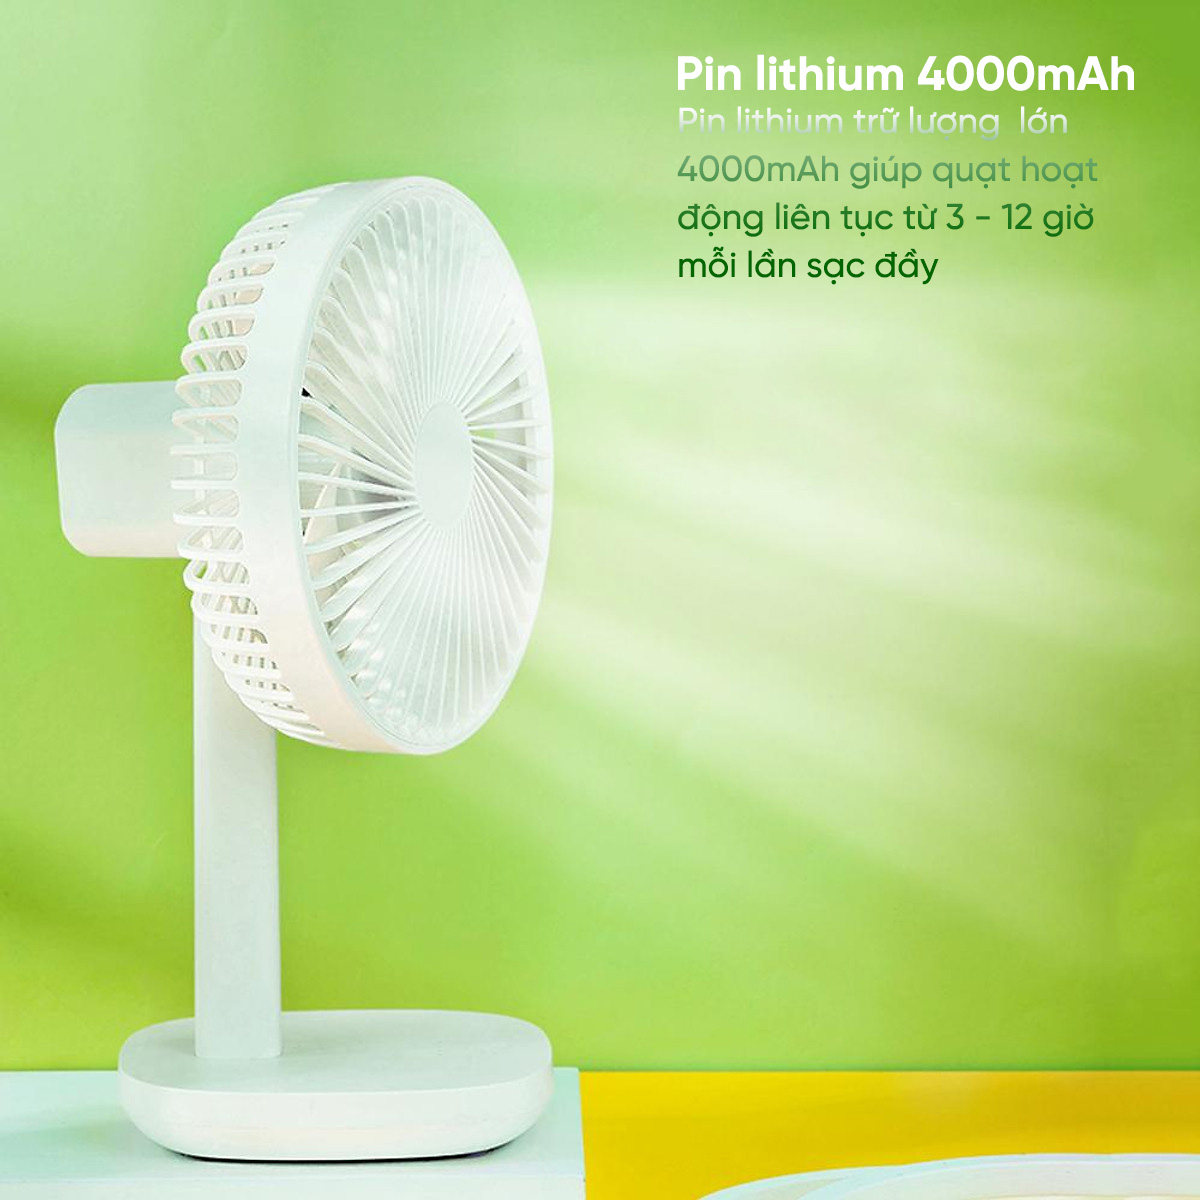 pin lithium-ion 4000mAh cho phép quạt hoạt động liên tục 3~12 giờ tùy theo tốc độ gió và chức năng xoay